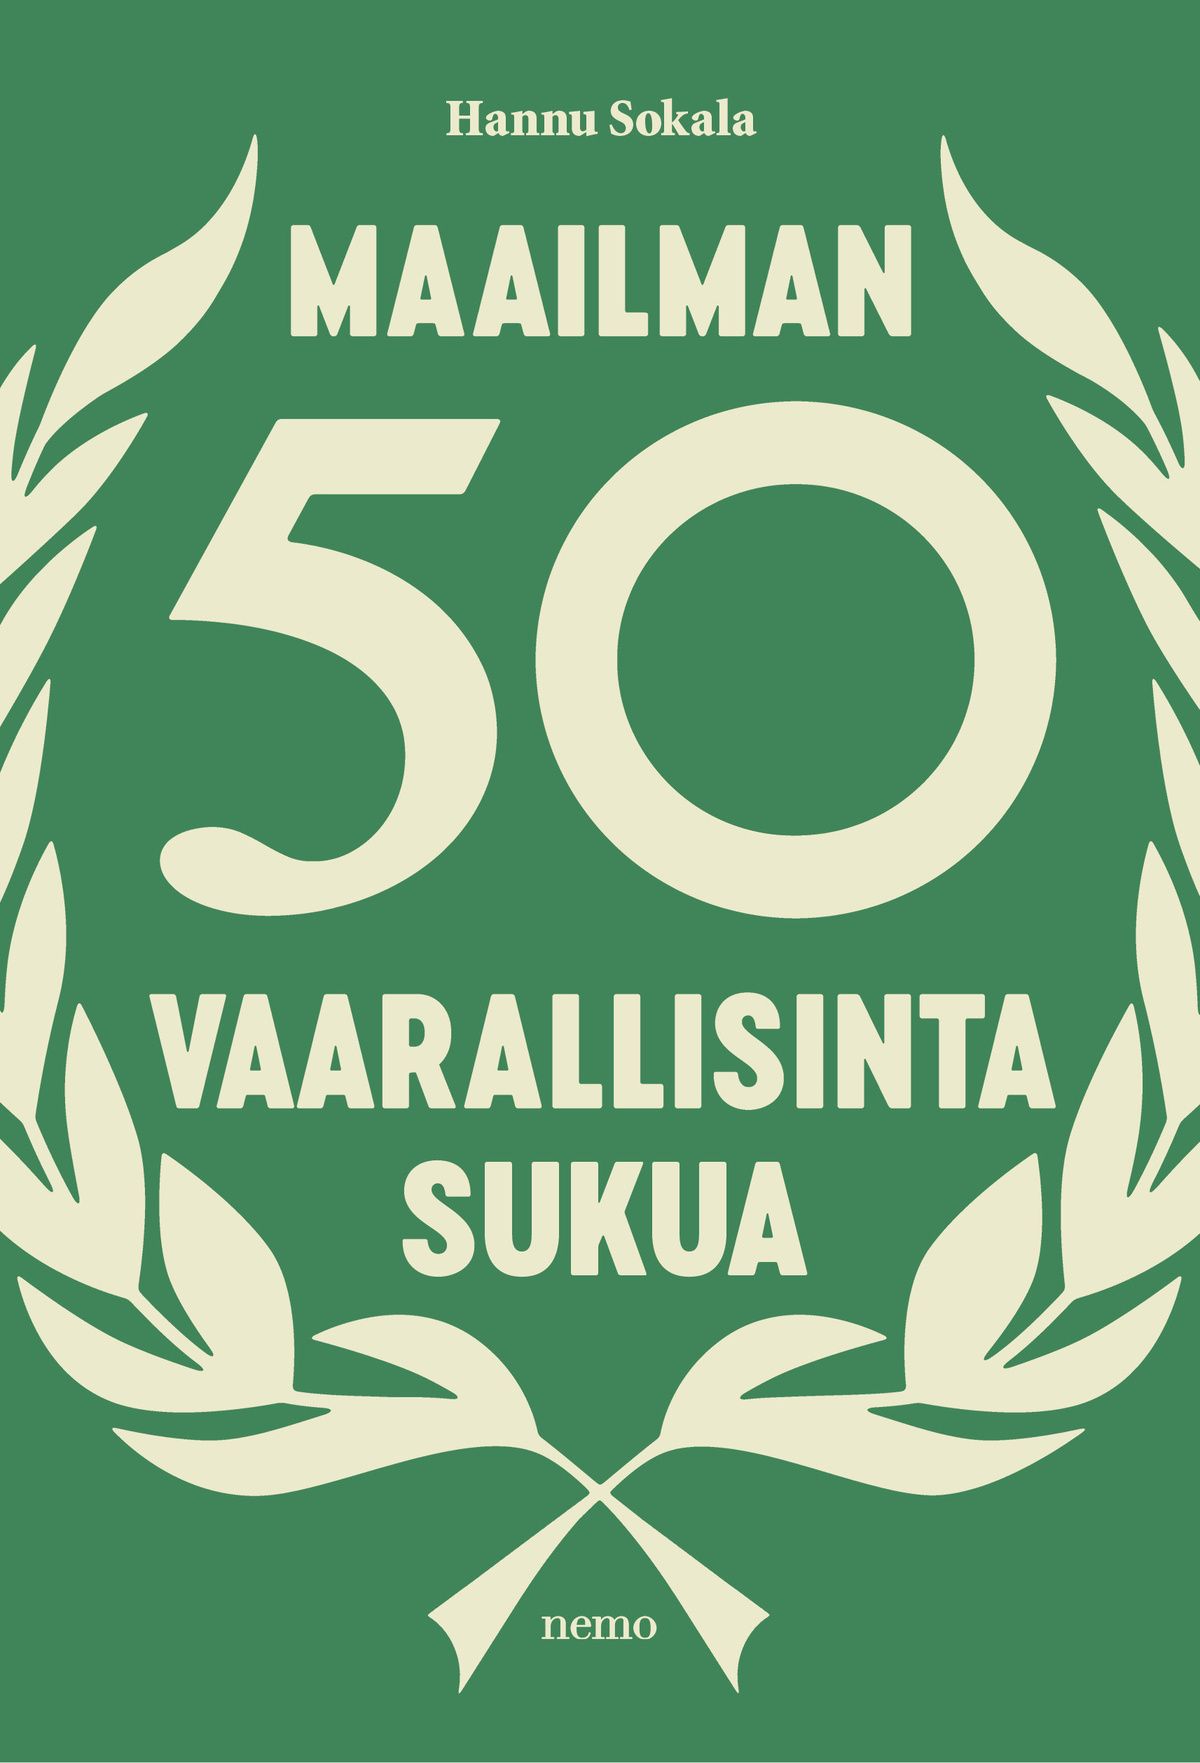 Hannu Sokala : Maailman 50 vaarallisinta sukua